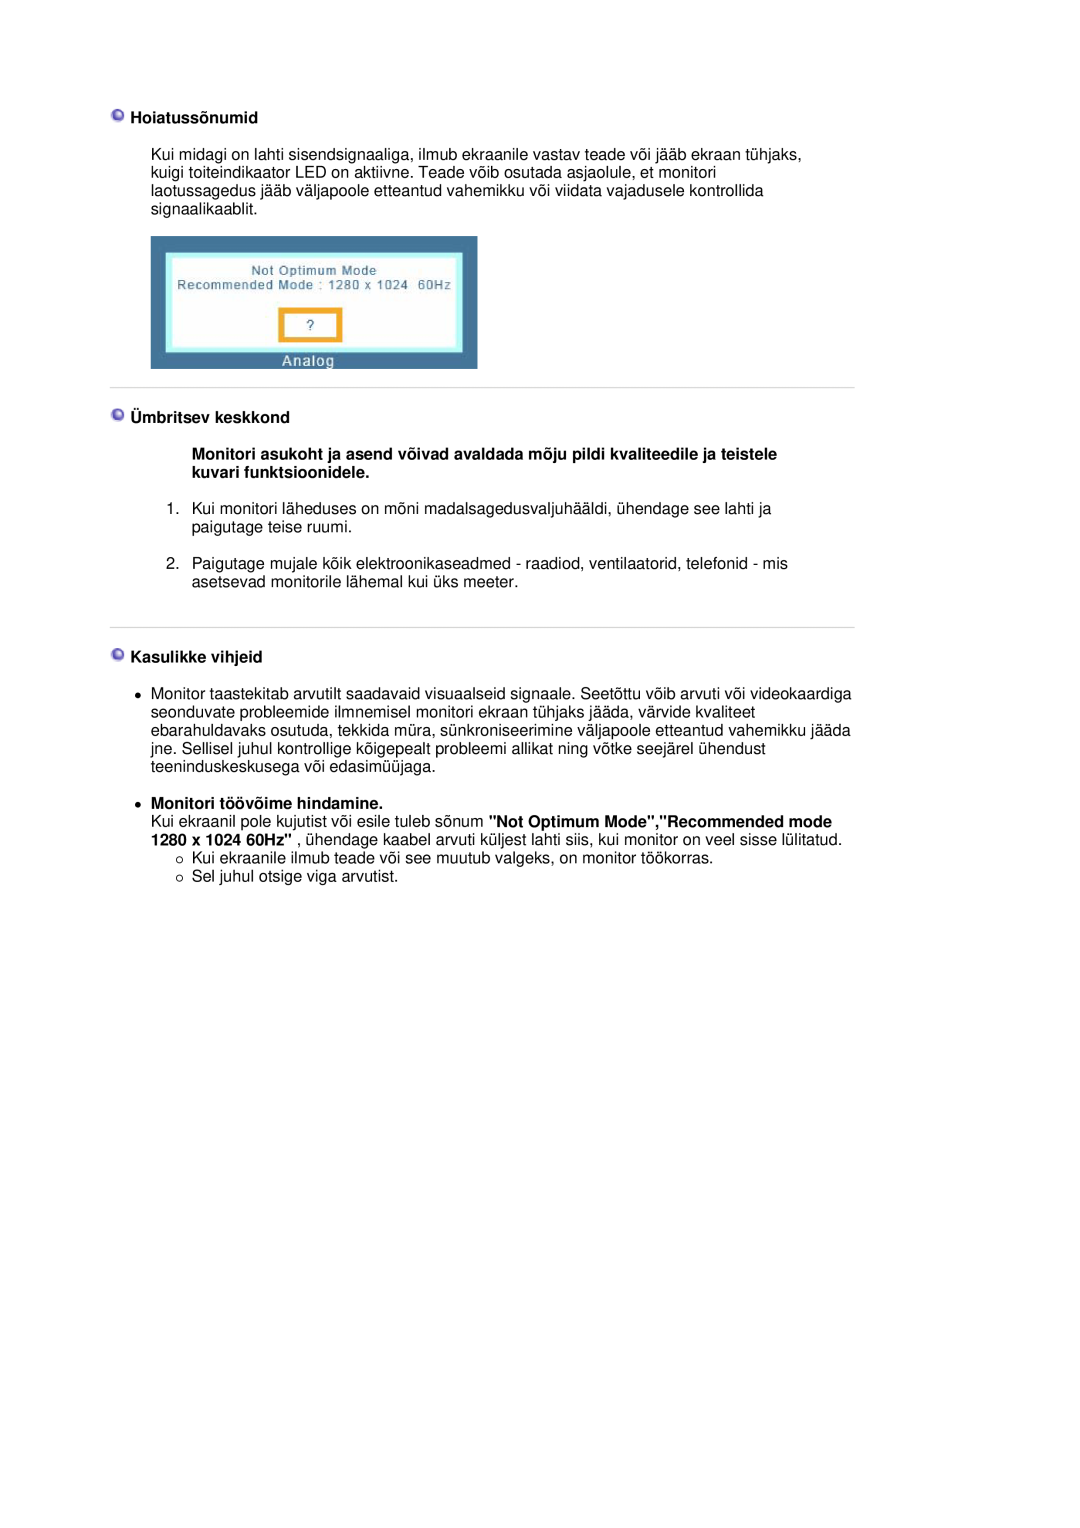 Samsung LS19HADKSP/EDC manual Hoiatussõnumid, Ümbritsev keskkond, Kasulikke vihjeid, z Monitori töövõime hindamine 